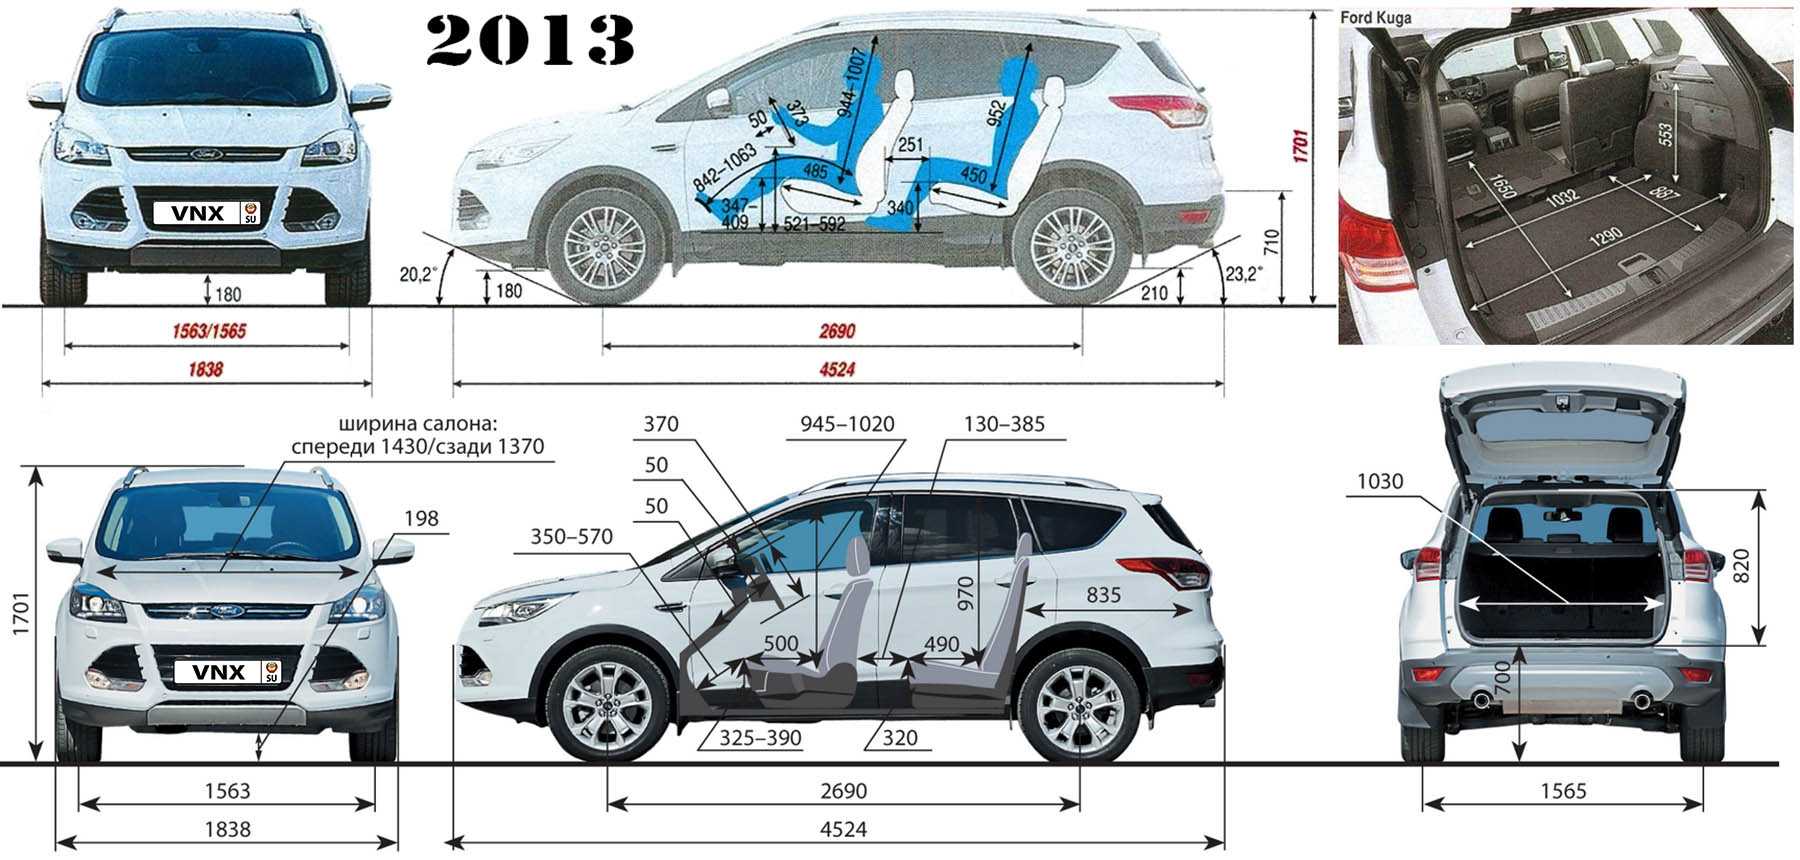 Ford kuga 2013 - 2017 - вся информация про форд куга ii поколения